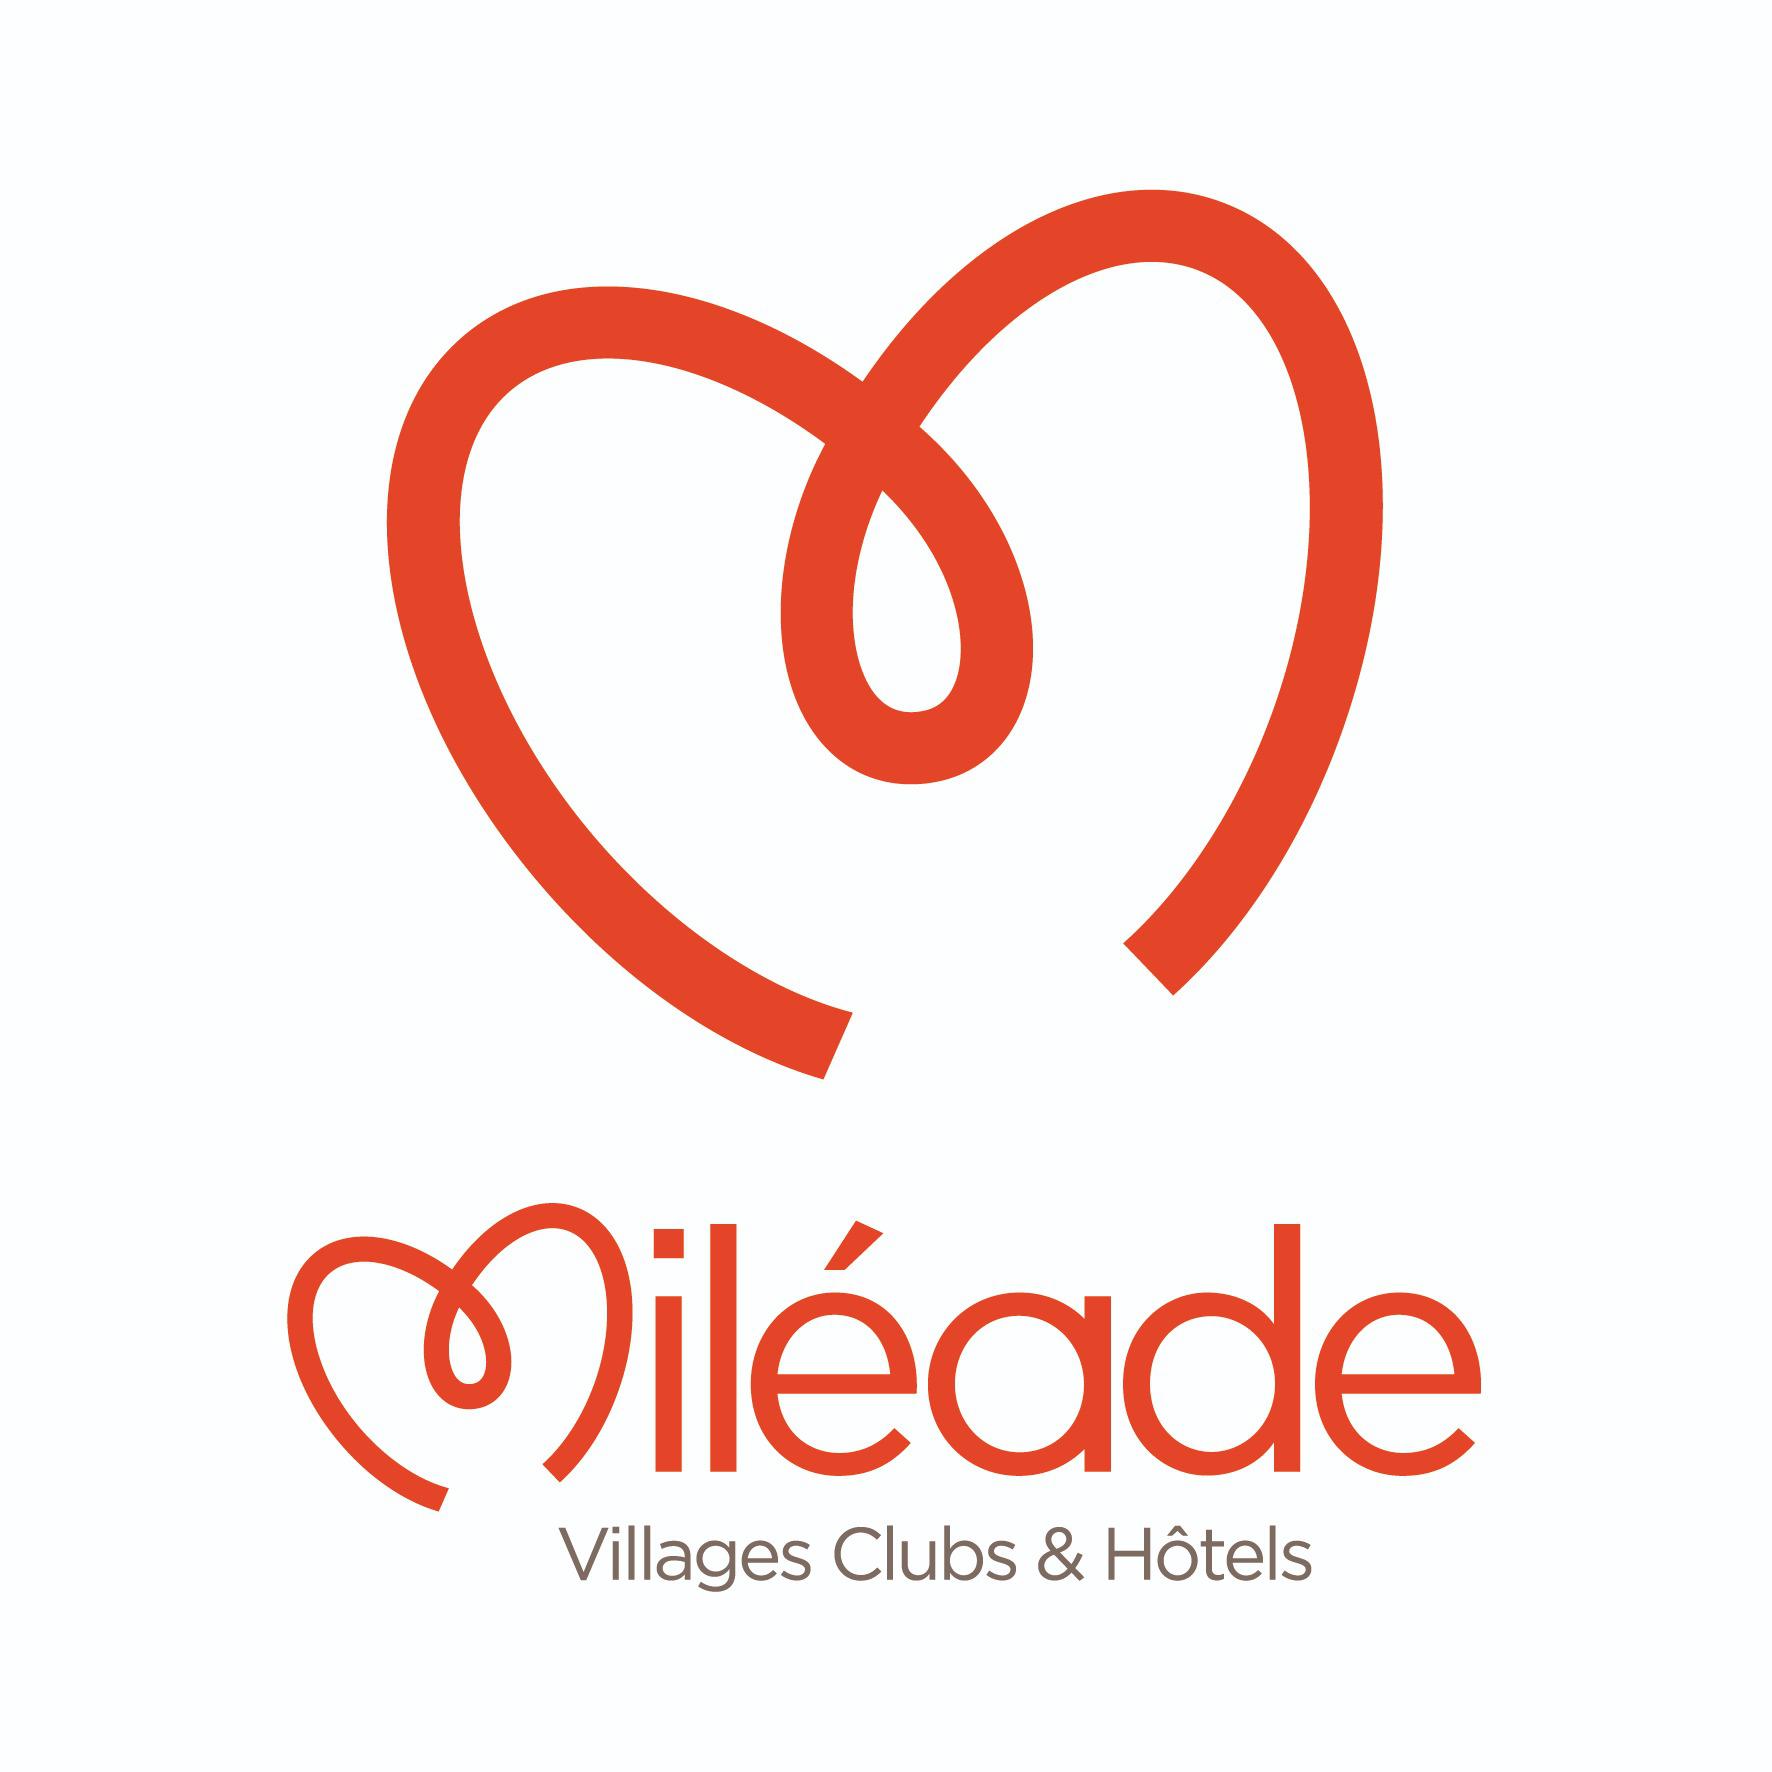 Village Club Miléade La Grande-Motte Logo